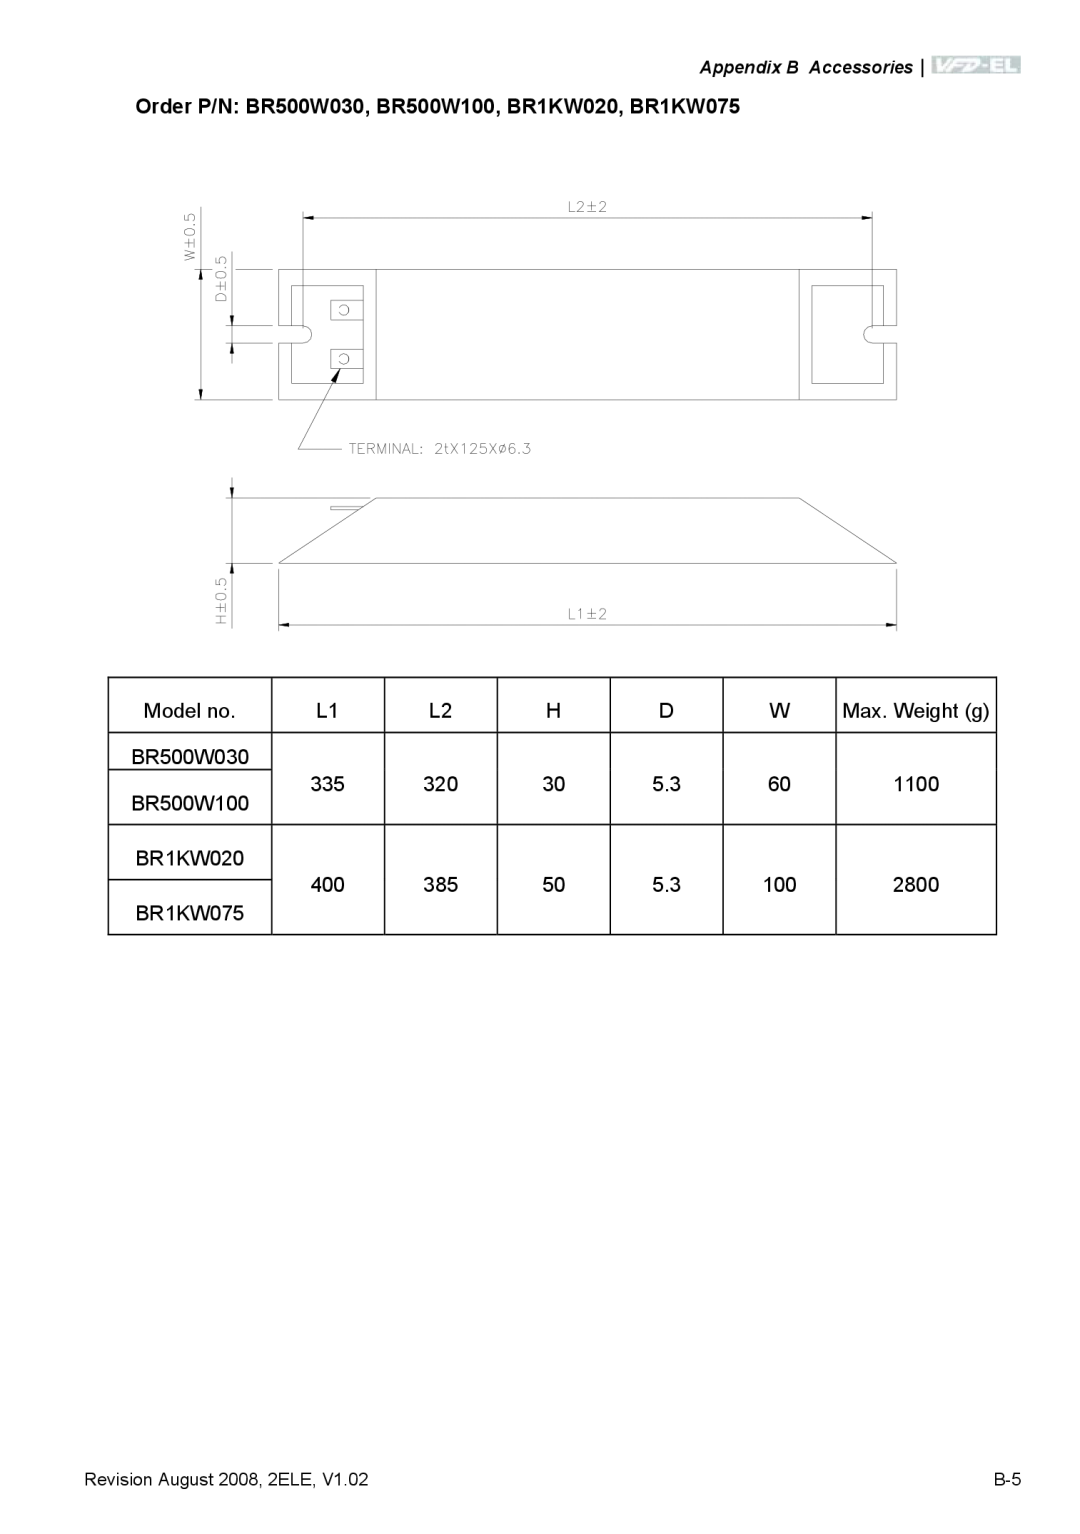 Delta Electronics VFD-EL manual Order P/N BR500W030, BR500W100, BR1KW020, BR1KW075 